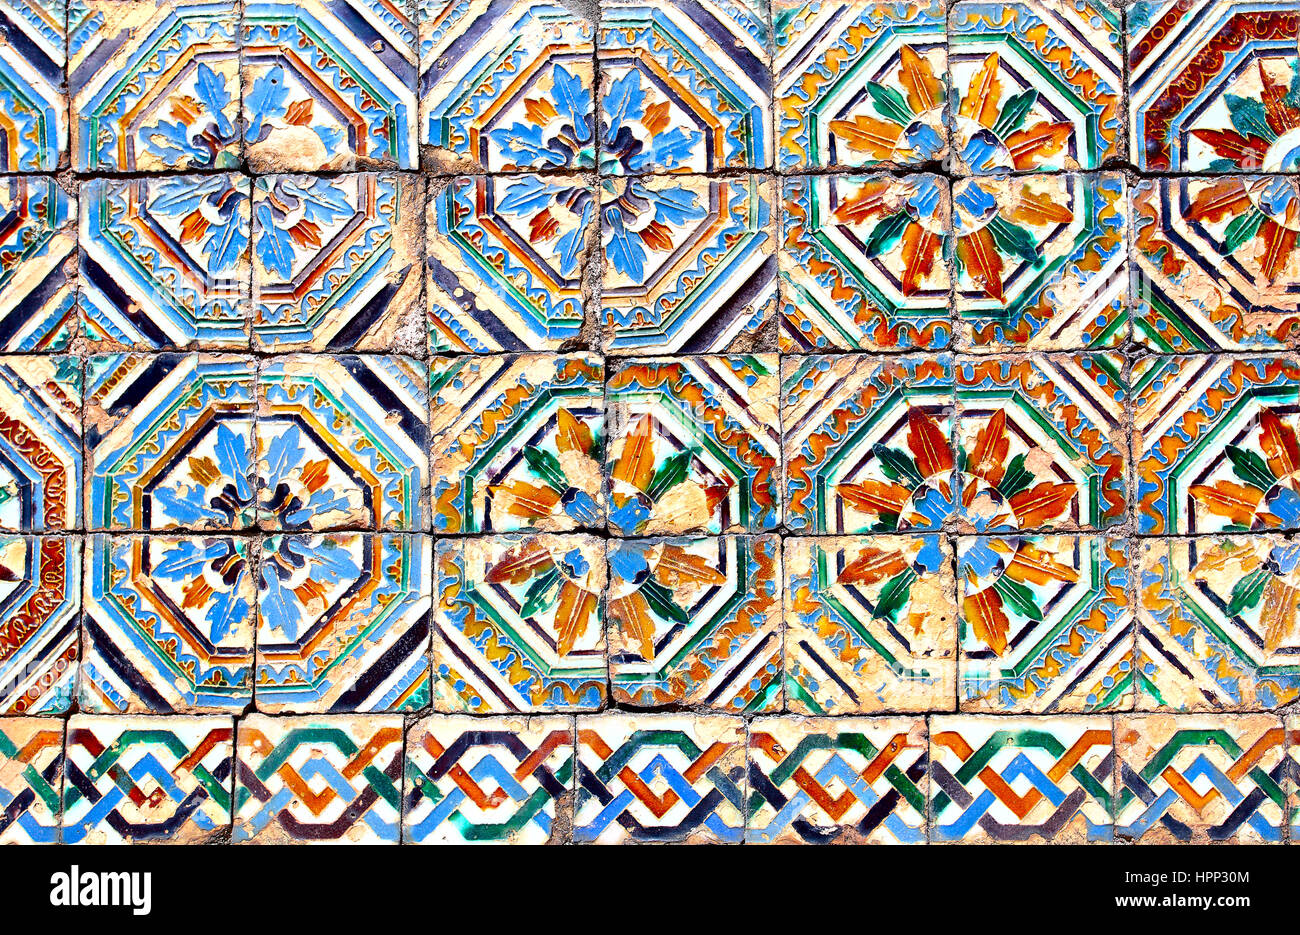 Les carreaux de céramique mauresque (vers 14ème siècle), Andalousie, Espagne Banque D'Images